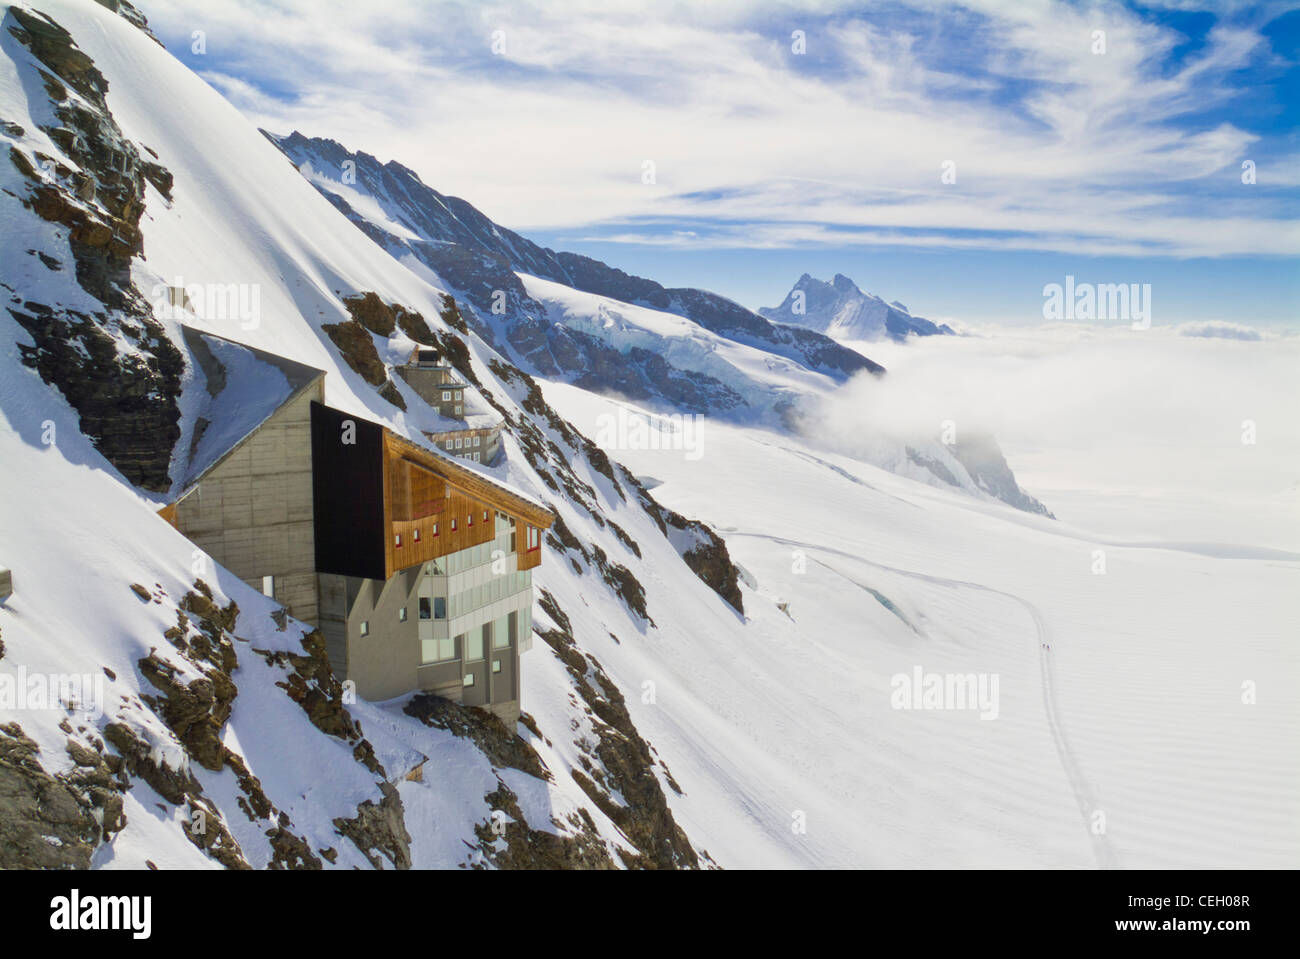 Le glacier Jungfraufirn sous la station météo au Jungfraujoch Oberland bernois Suisse Europe Banque D'Images